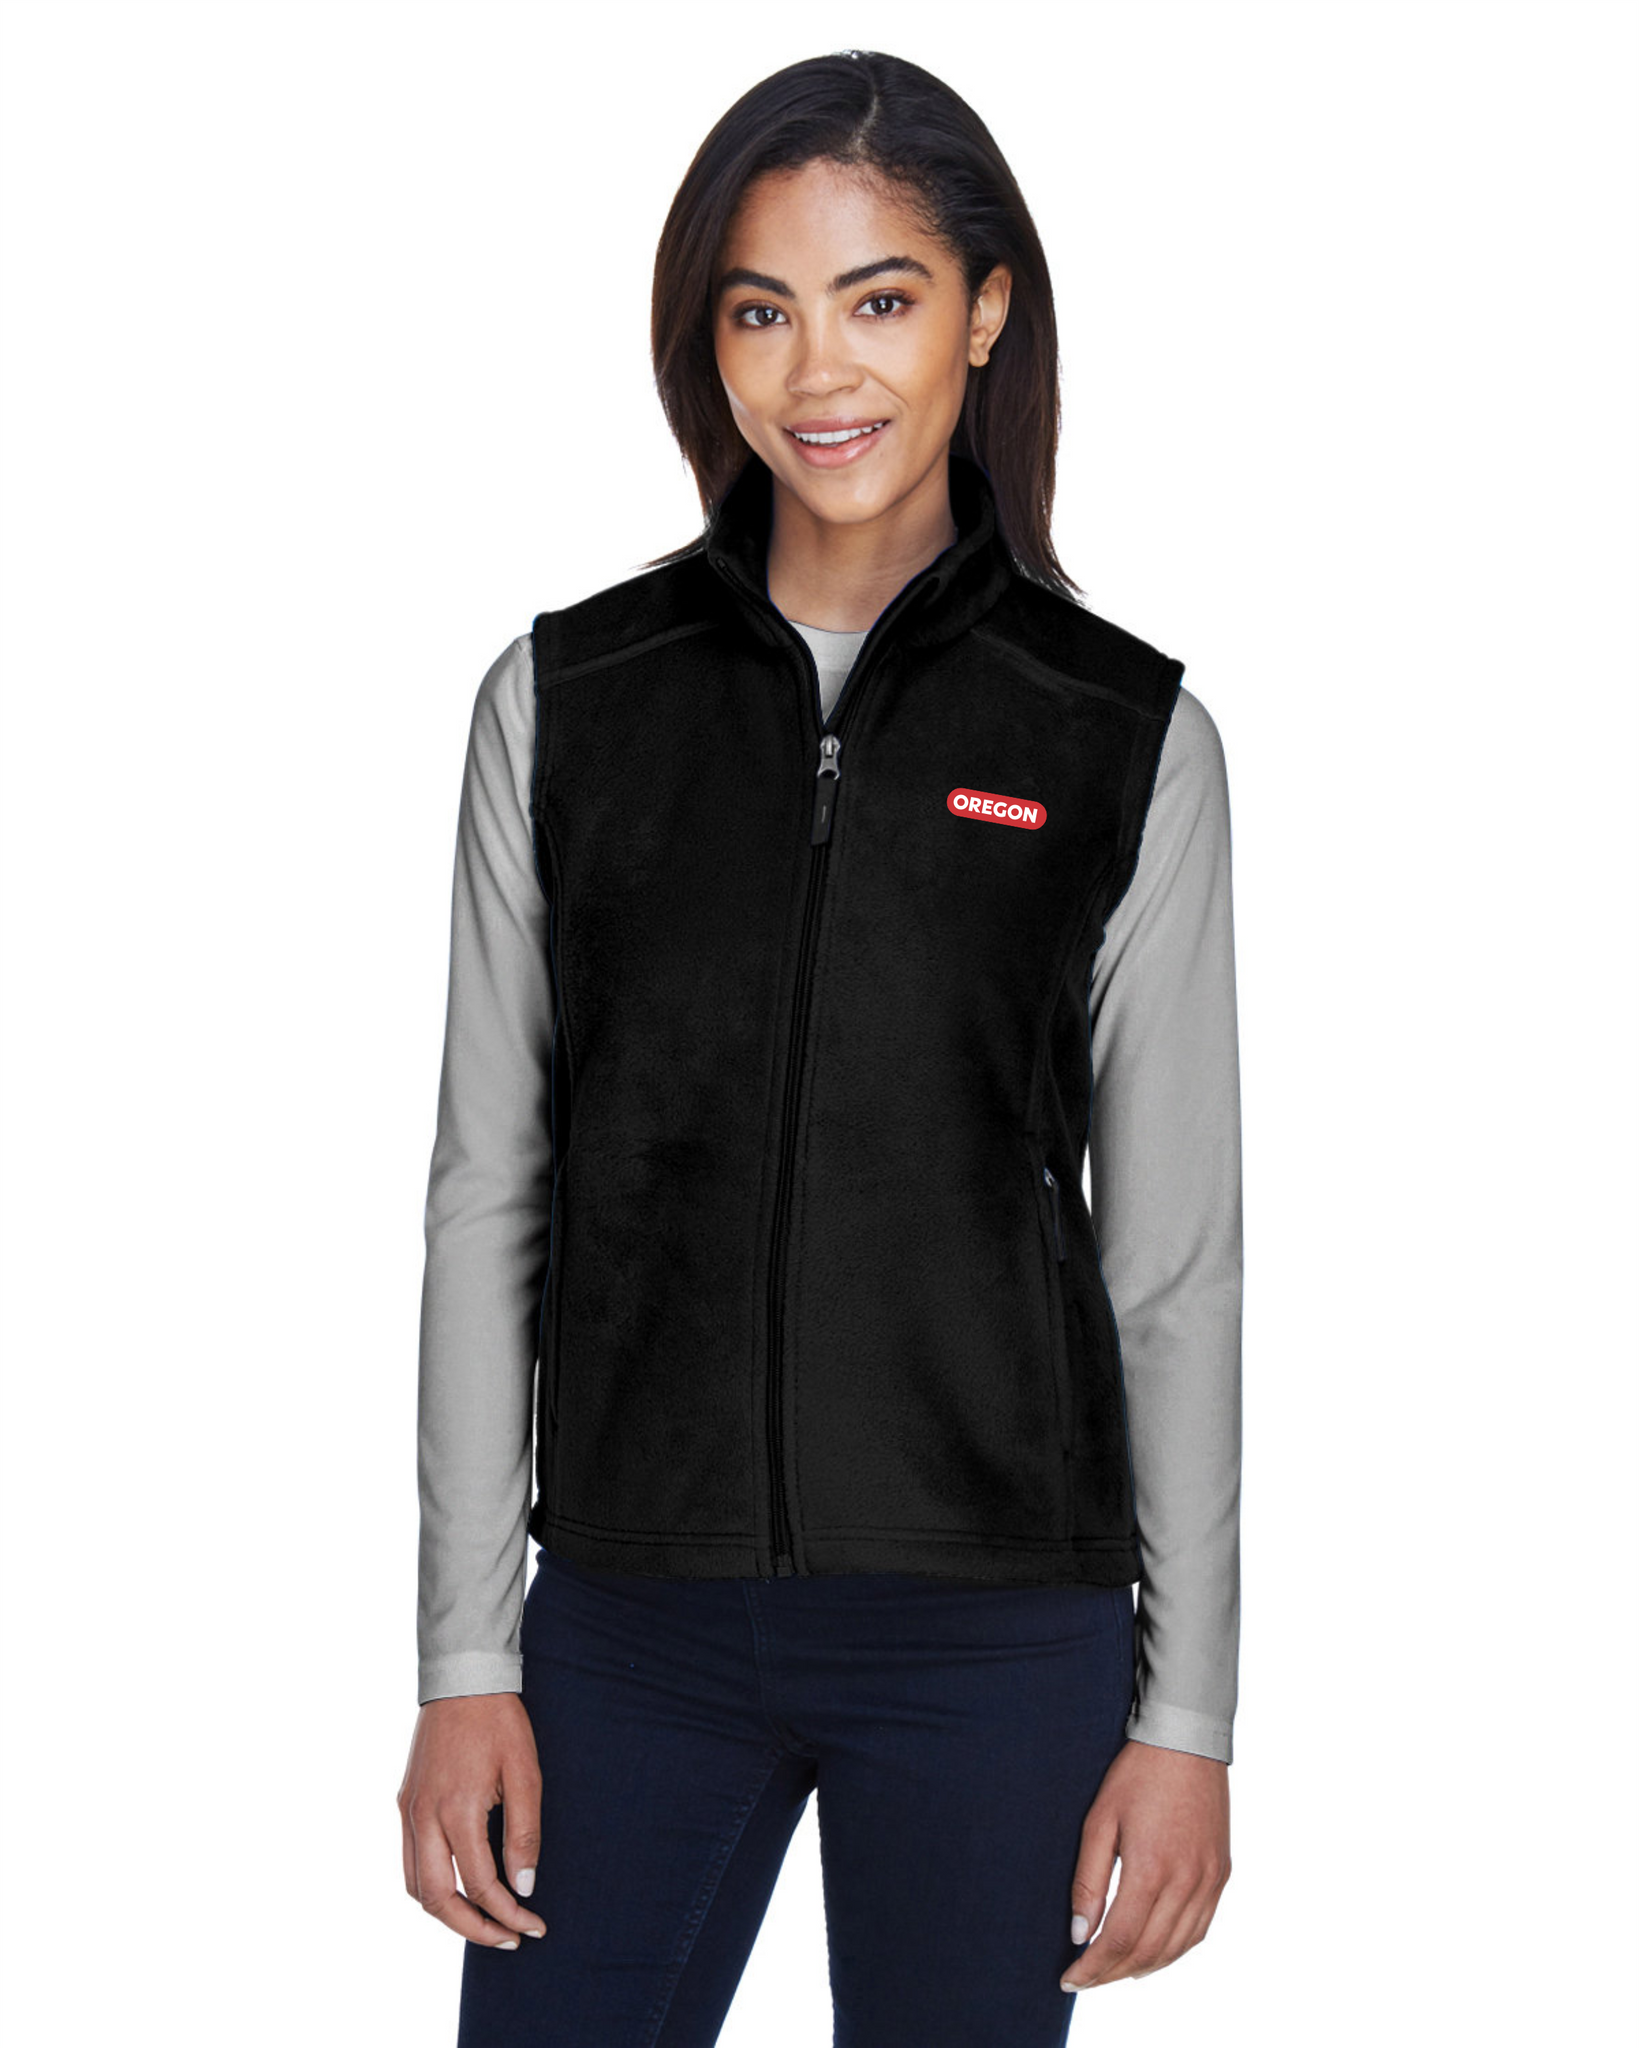 Women's zip-front Arctic fleece vest jacket